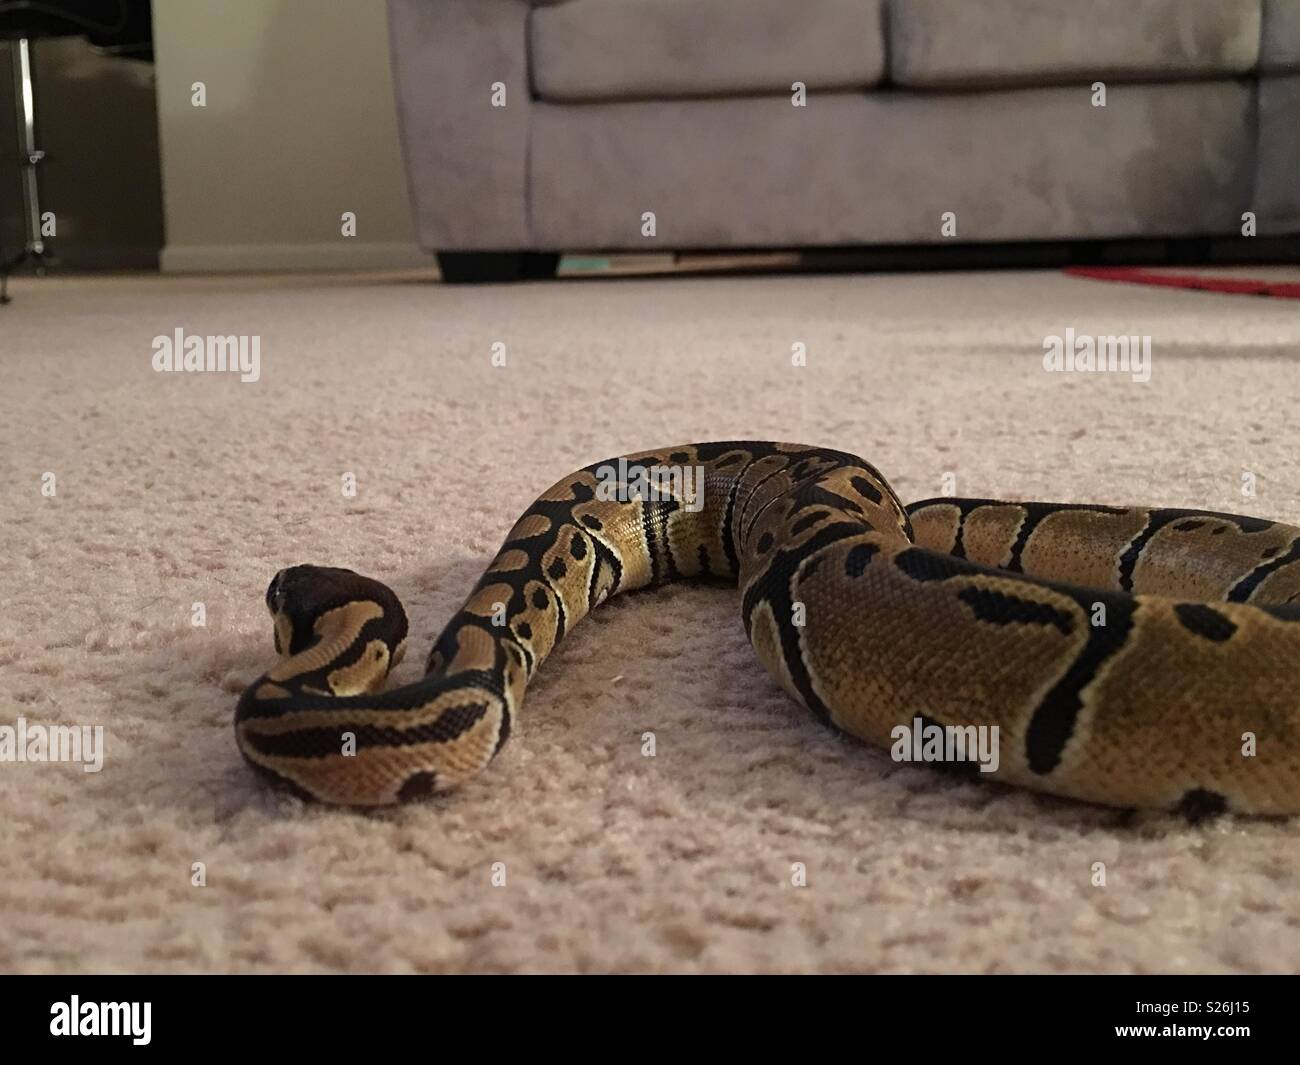 Una sfera python in movimento attraverso un pavimento di moquette Foto Stock